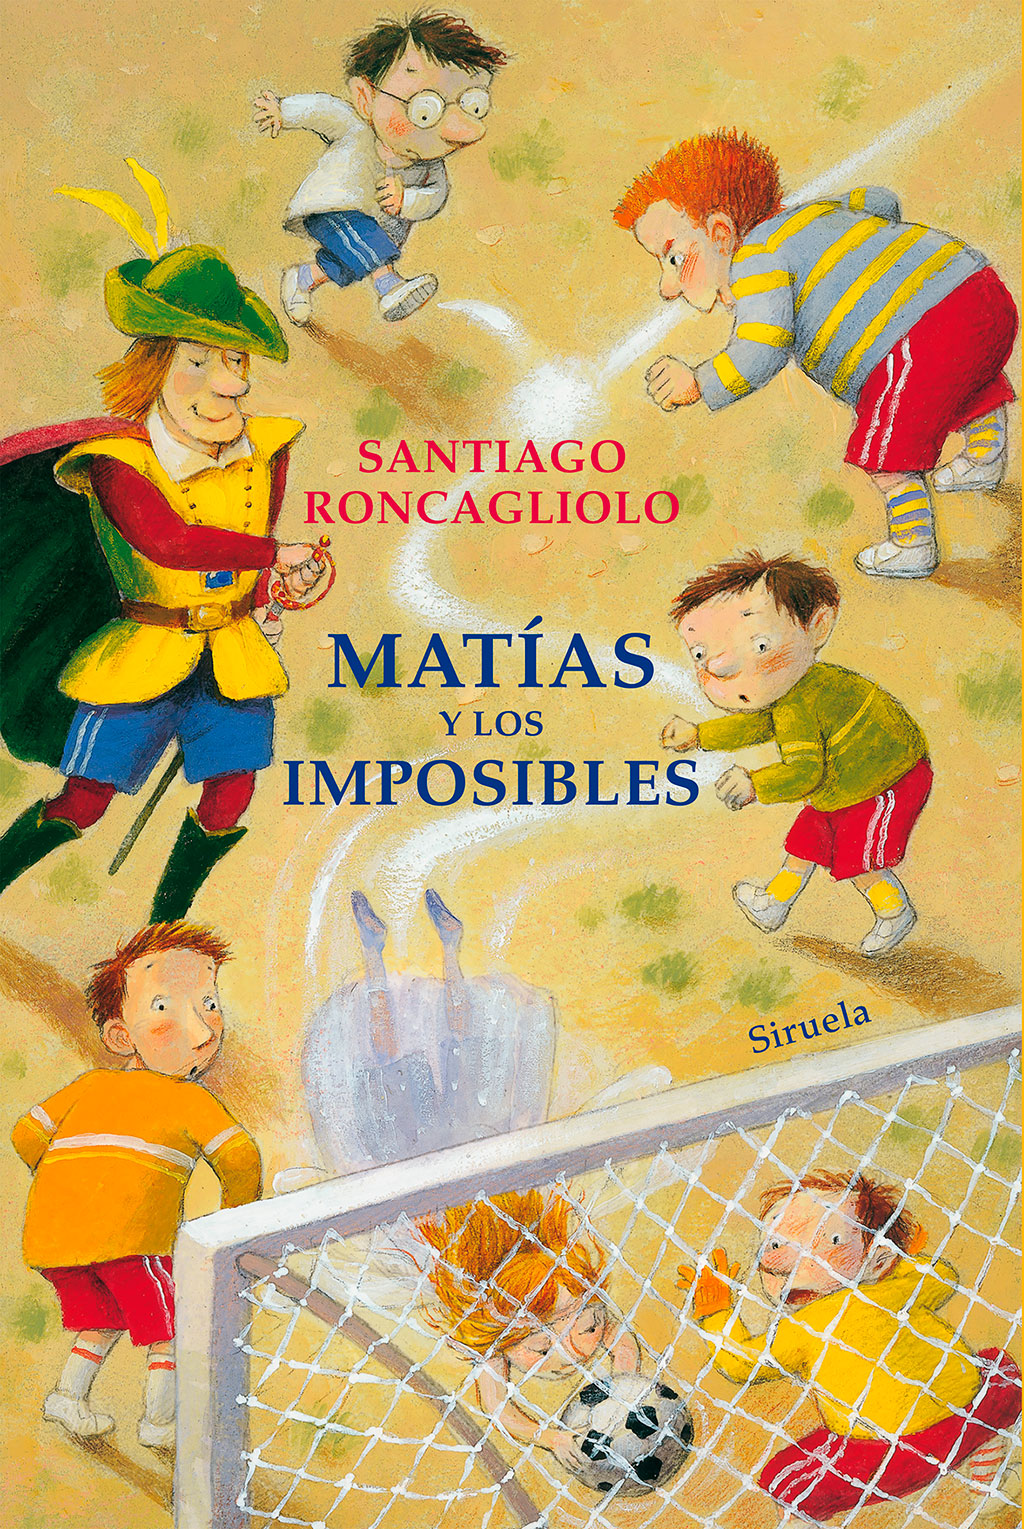 Santiago Roncagliolo. Matias y los imposibles.